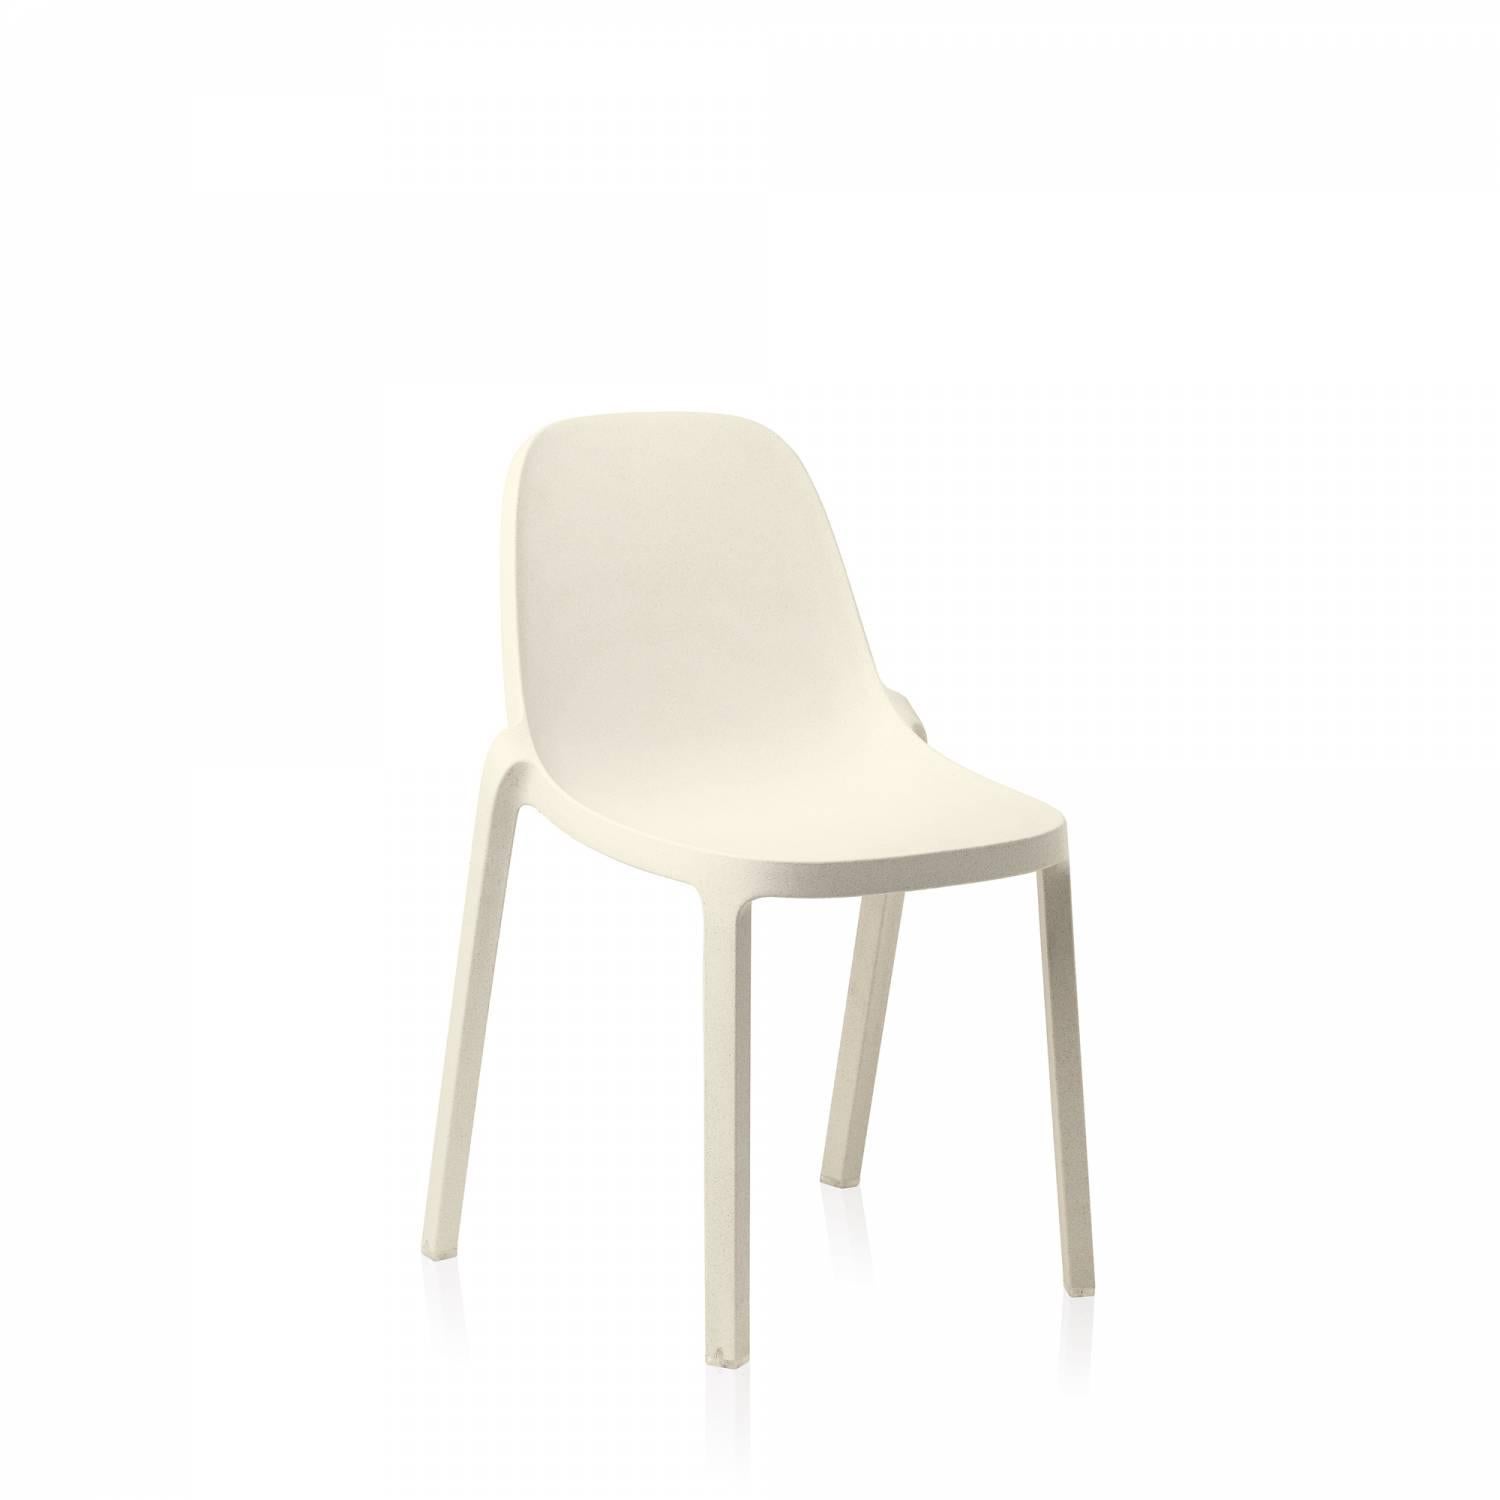 Philippe Starck et Emeco se sont associés pour créer une nouvelle chaise qui est récupérée, recyclée, recyclable et conçue pour durer. La chaise est fabriquée à partir de 75 % de polypropylène usagé et de 15 % de fibres de bois récupérées qui